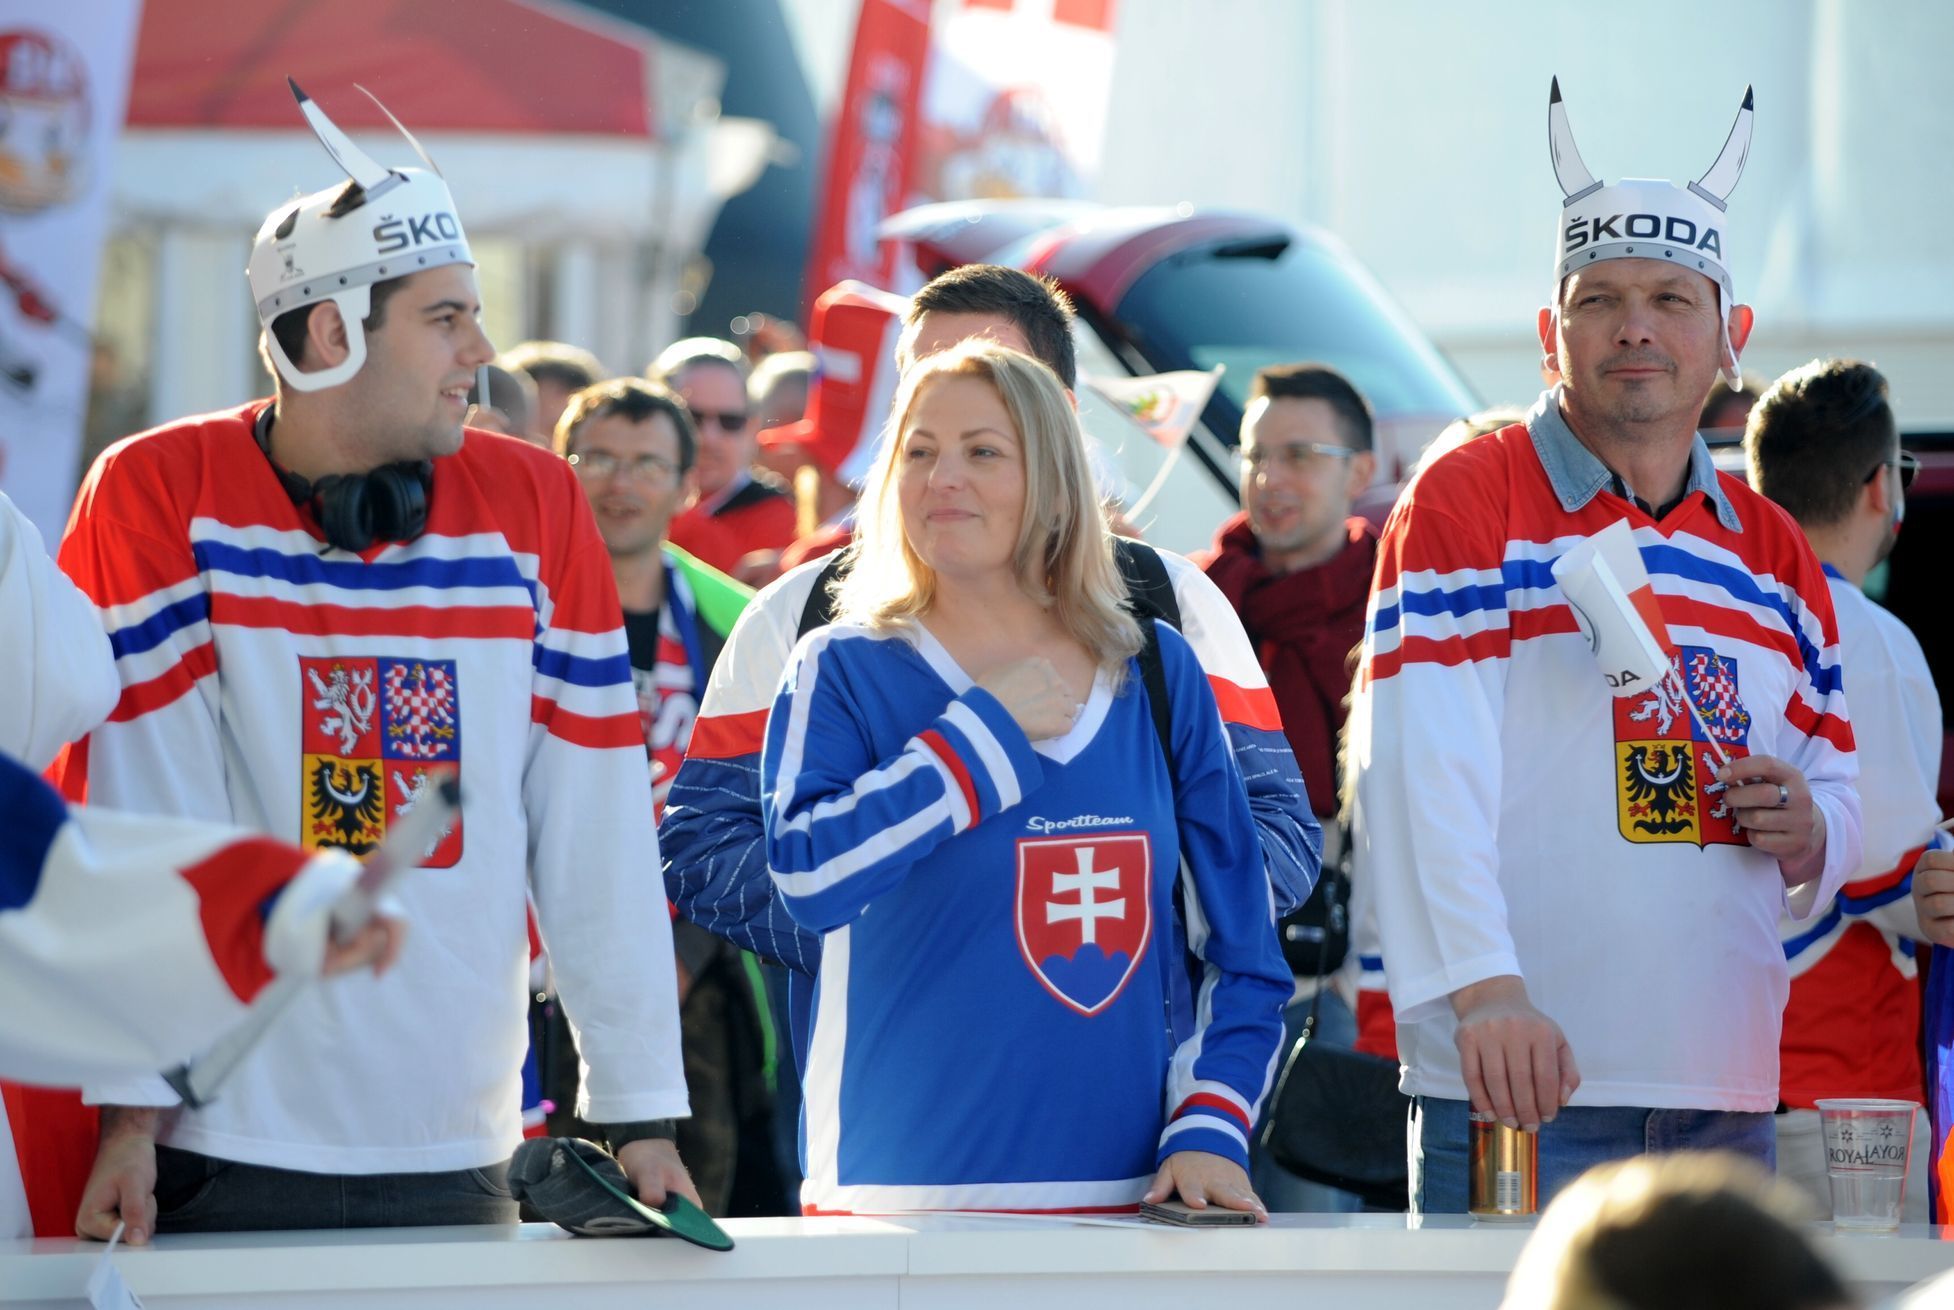 Fanoušci před zápasem Česko - Slovensko na MS 2018